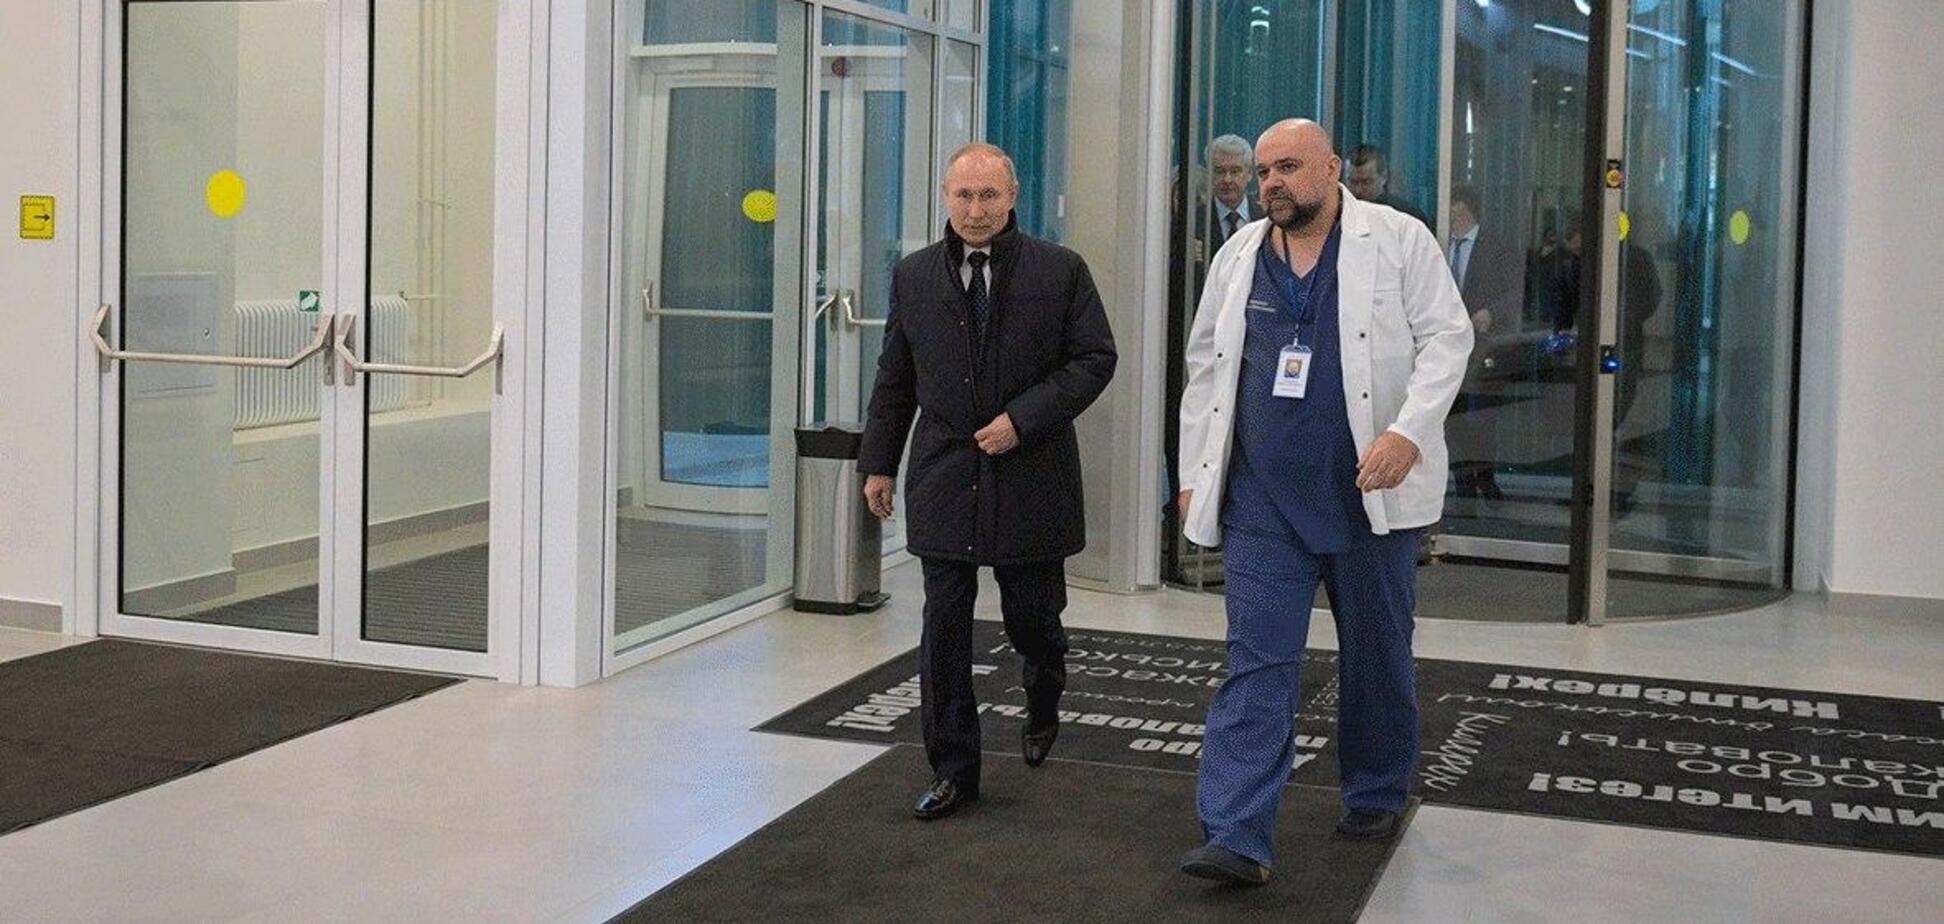 В России выявили коронавирус у врача, с которым общался Путин